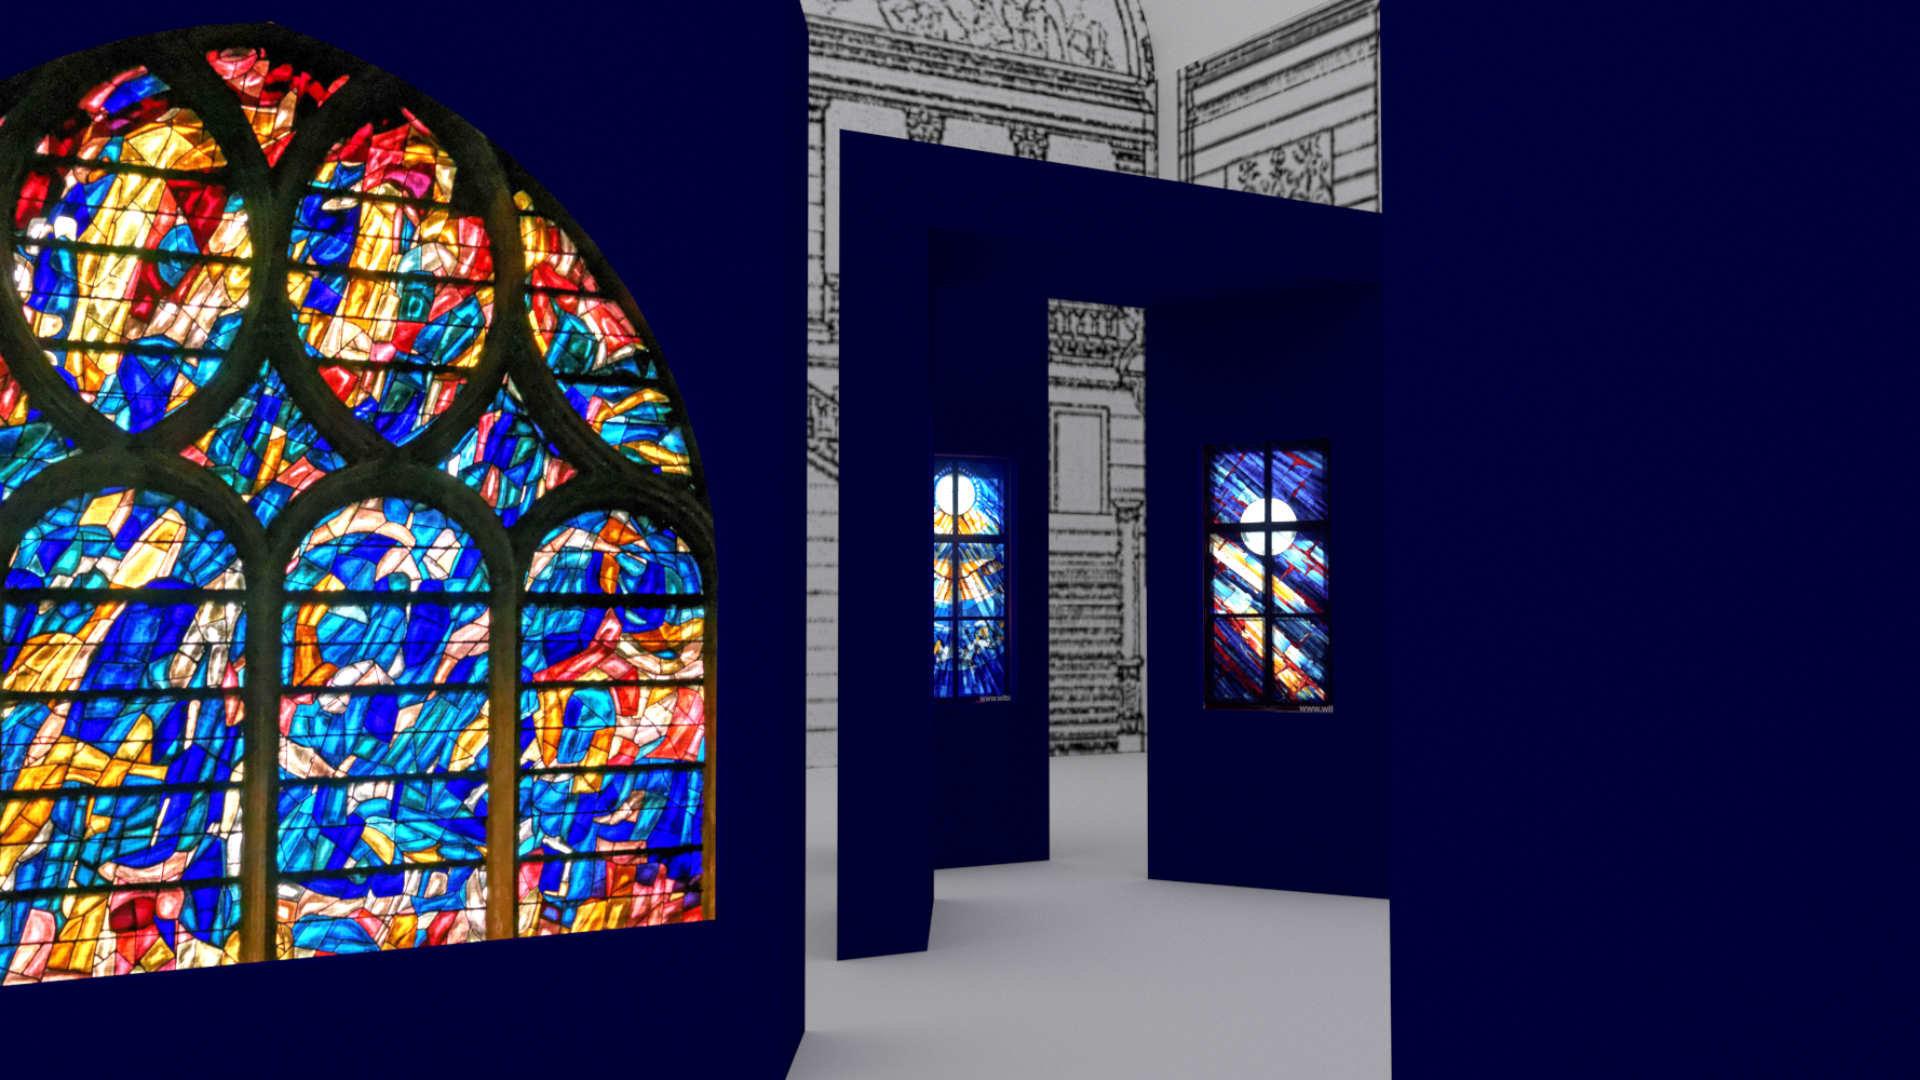 Projekt koncepcyjny wystawy czasowej w Muzeum Narodowym w Poznaniu (fragment) – komputerowa wizualizacja barwna widoku perspektywicznego, ukazująca przestrzeń ekspozycji z punktu widzenia osoby zwiedzającej.